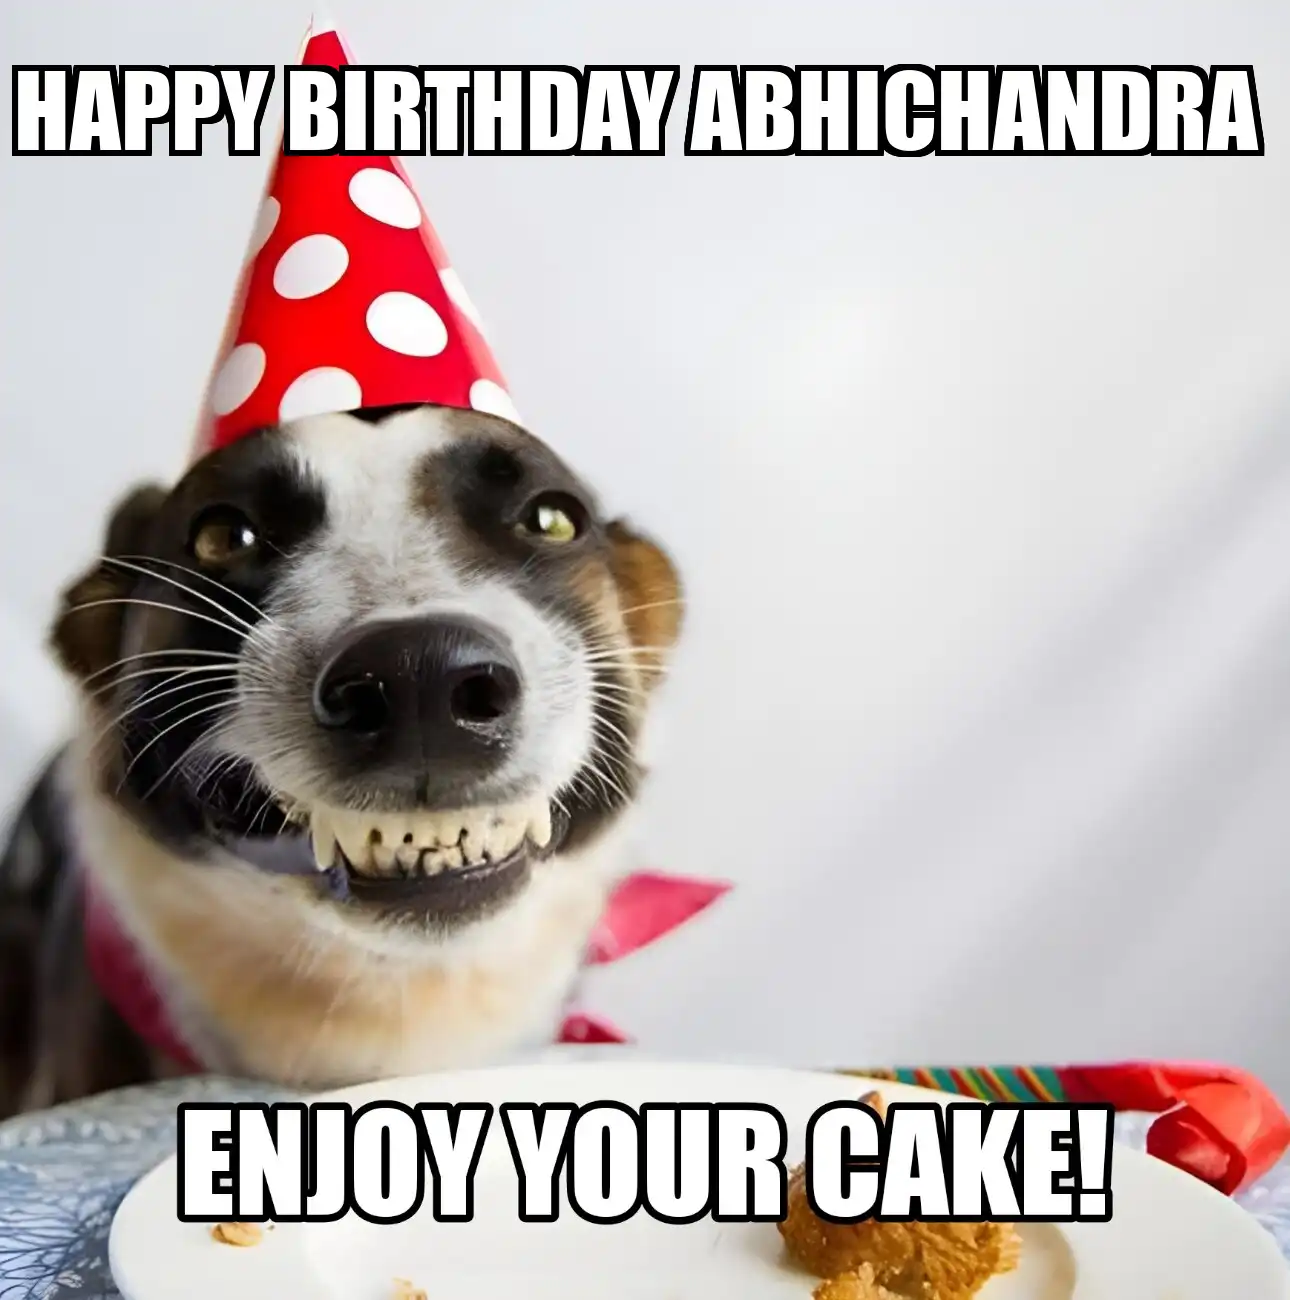 Happy Birthday Abhichandra Enjoy Your Cake Dog Meme